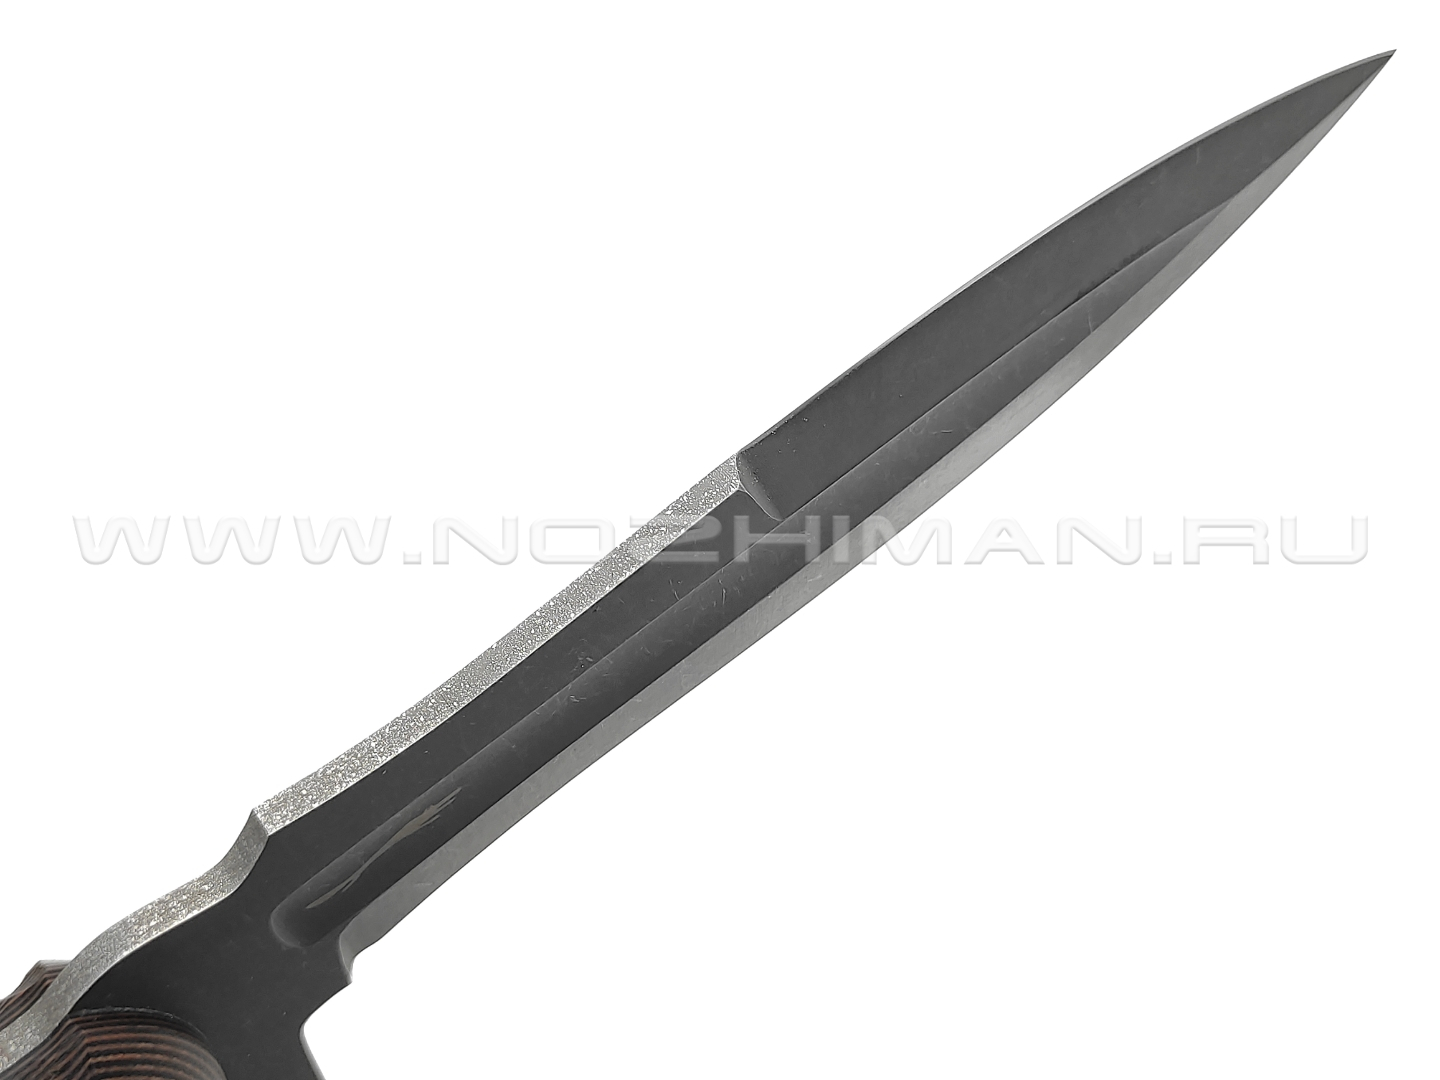 Волчий Век нож Стрела Custom сталь N690 WA blackwash, рукоять G10 black & orange